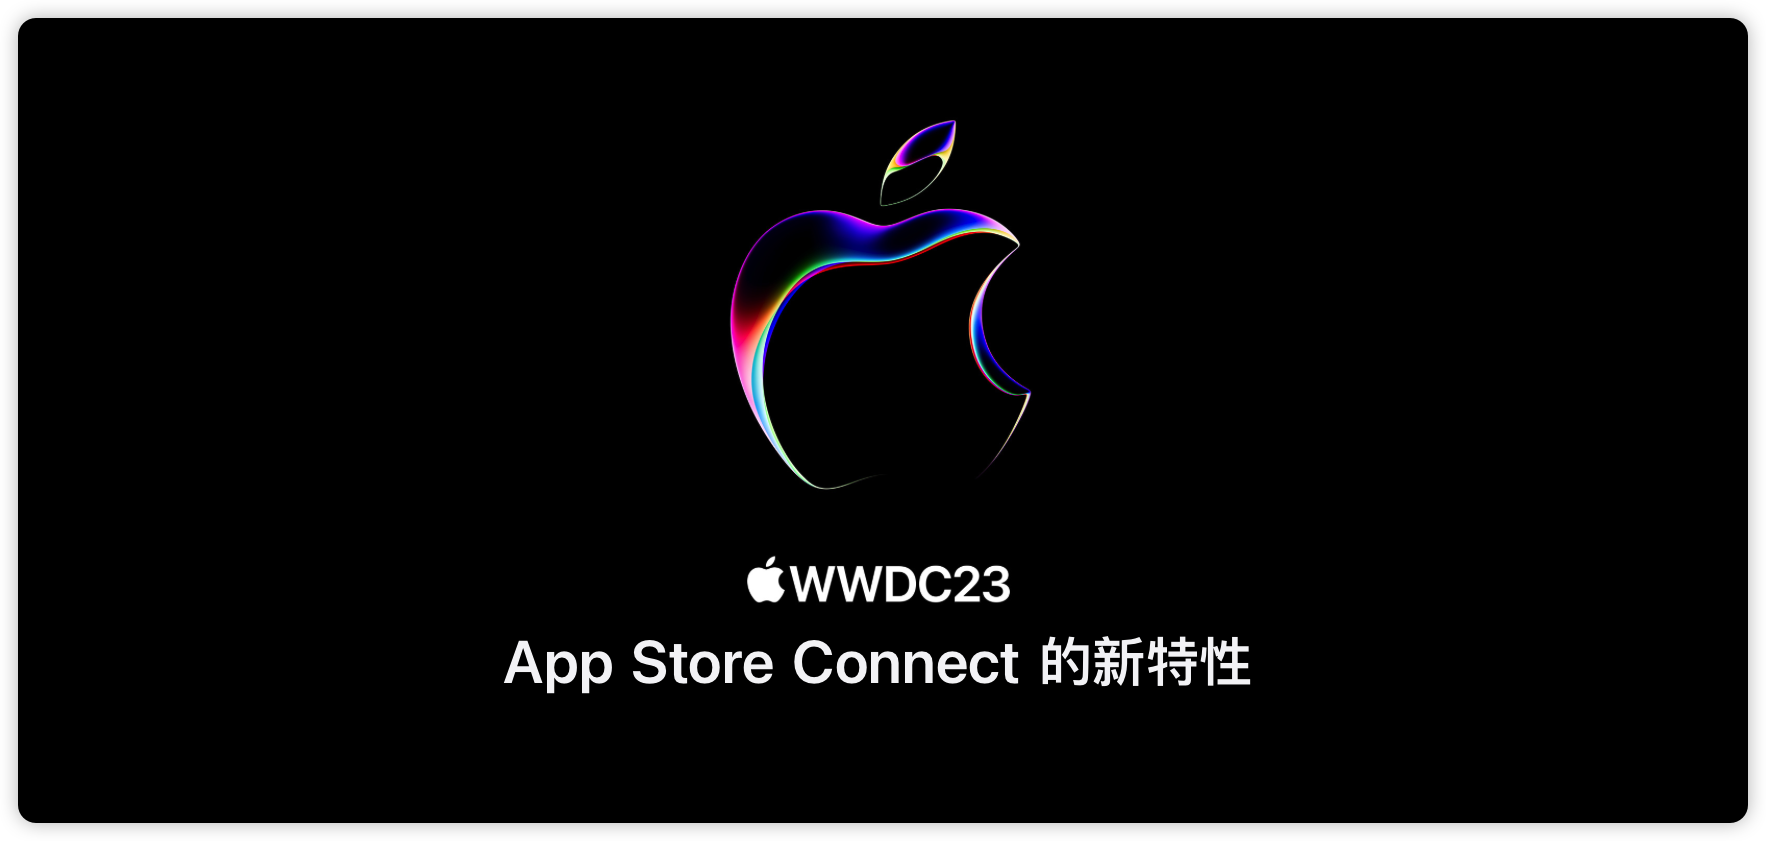 WWDC23-10117-00